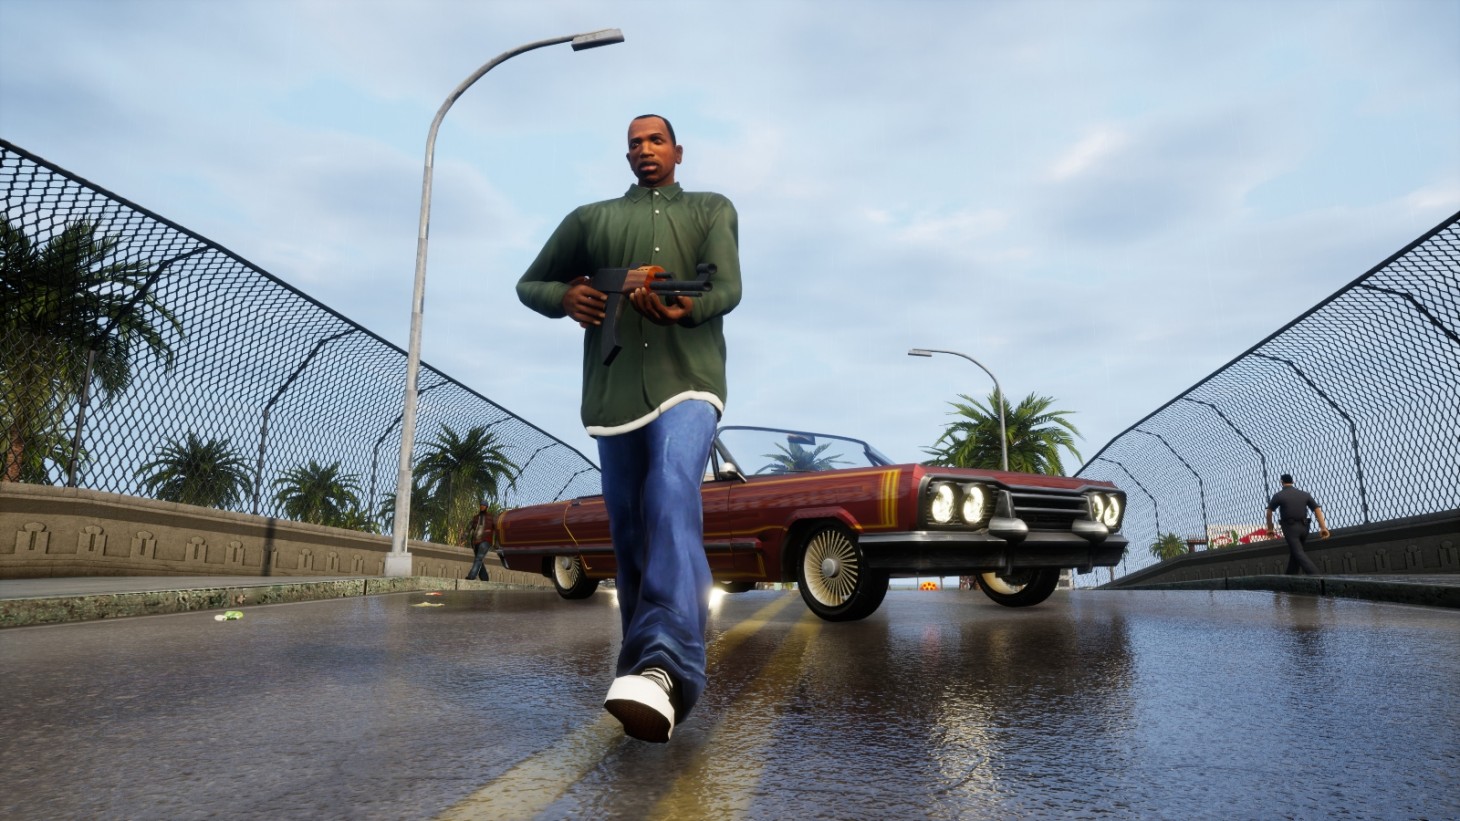 รีวิว Grand Theft Auto: The Trilogy - The Definitive Edition มัดรวมตำนานเกมขโมยรถสามภาค ไม่เล่นไม่ได้แล้ว – GameMonday